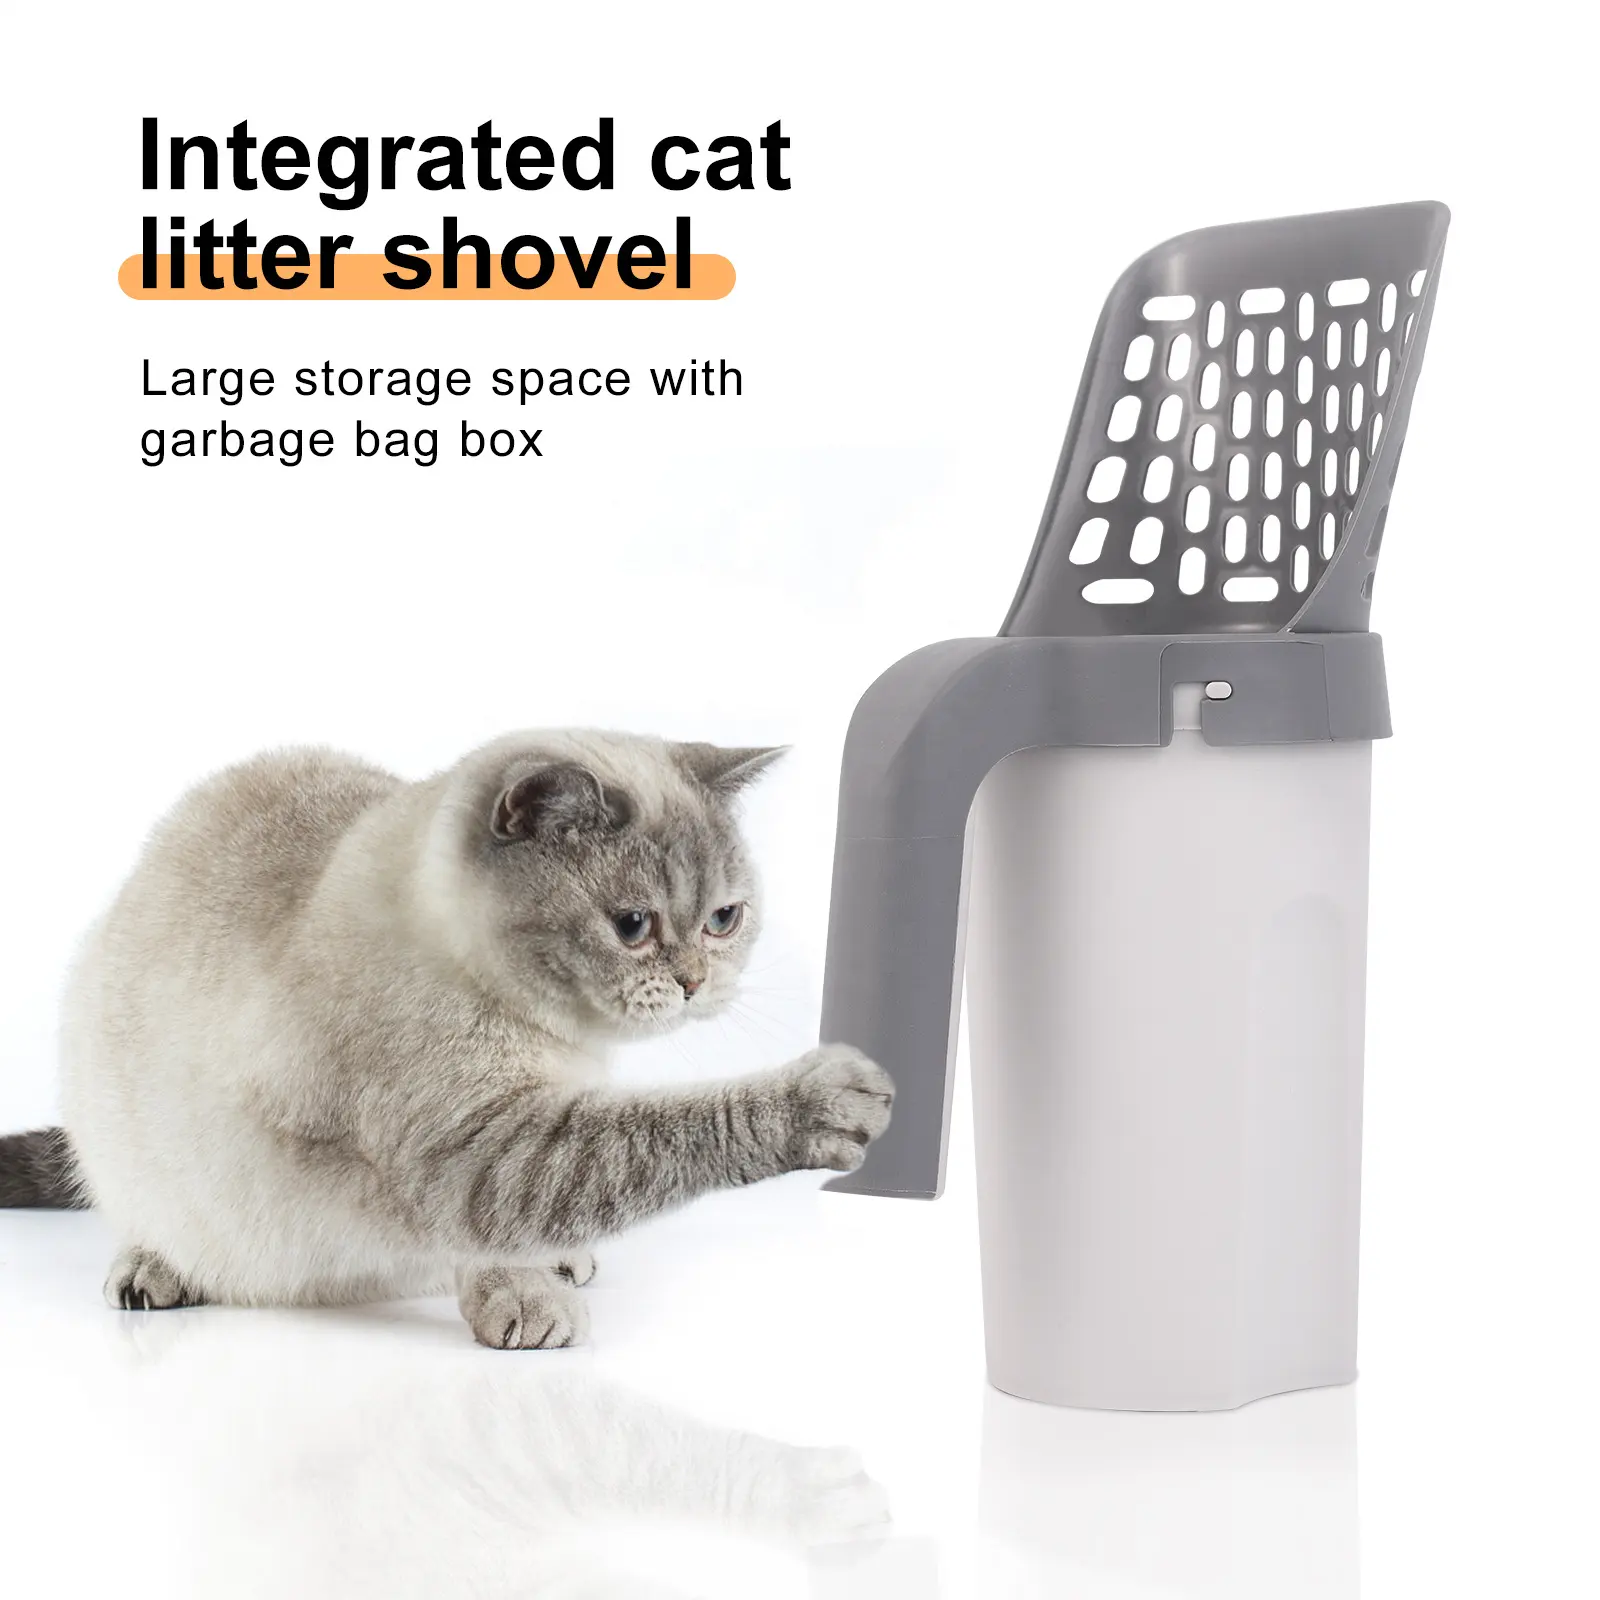 Yeni tasarım entegre kedi çöp kürek 2 in 1 ayrılabilir kedi kumu kepçesi ile atık torbaları Bin Pet Disposal bertaraf temizleme aracı